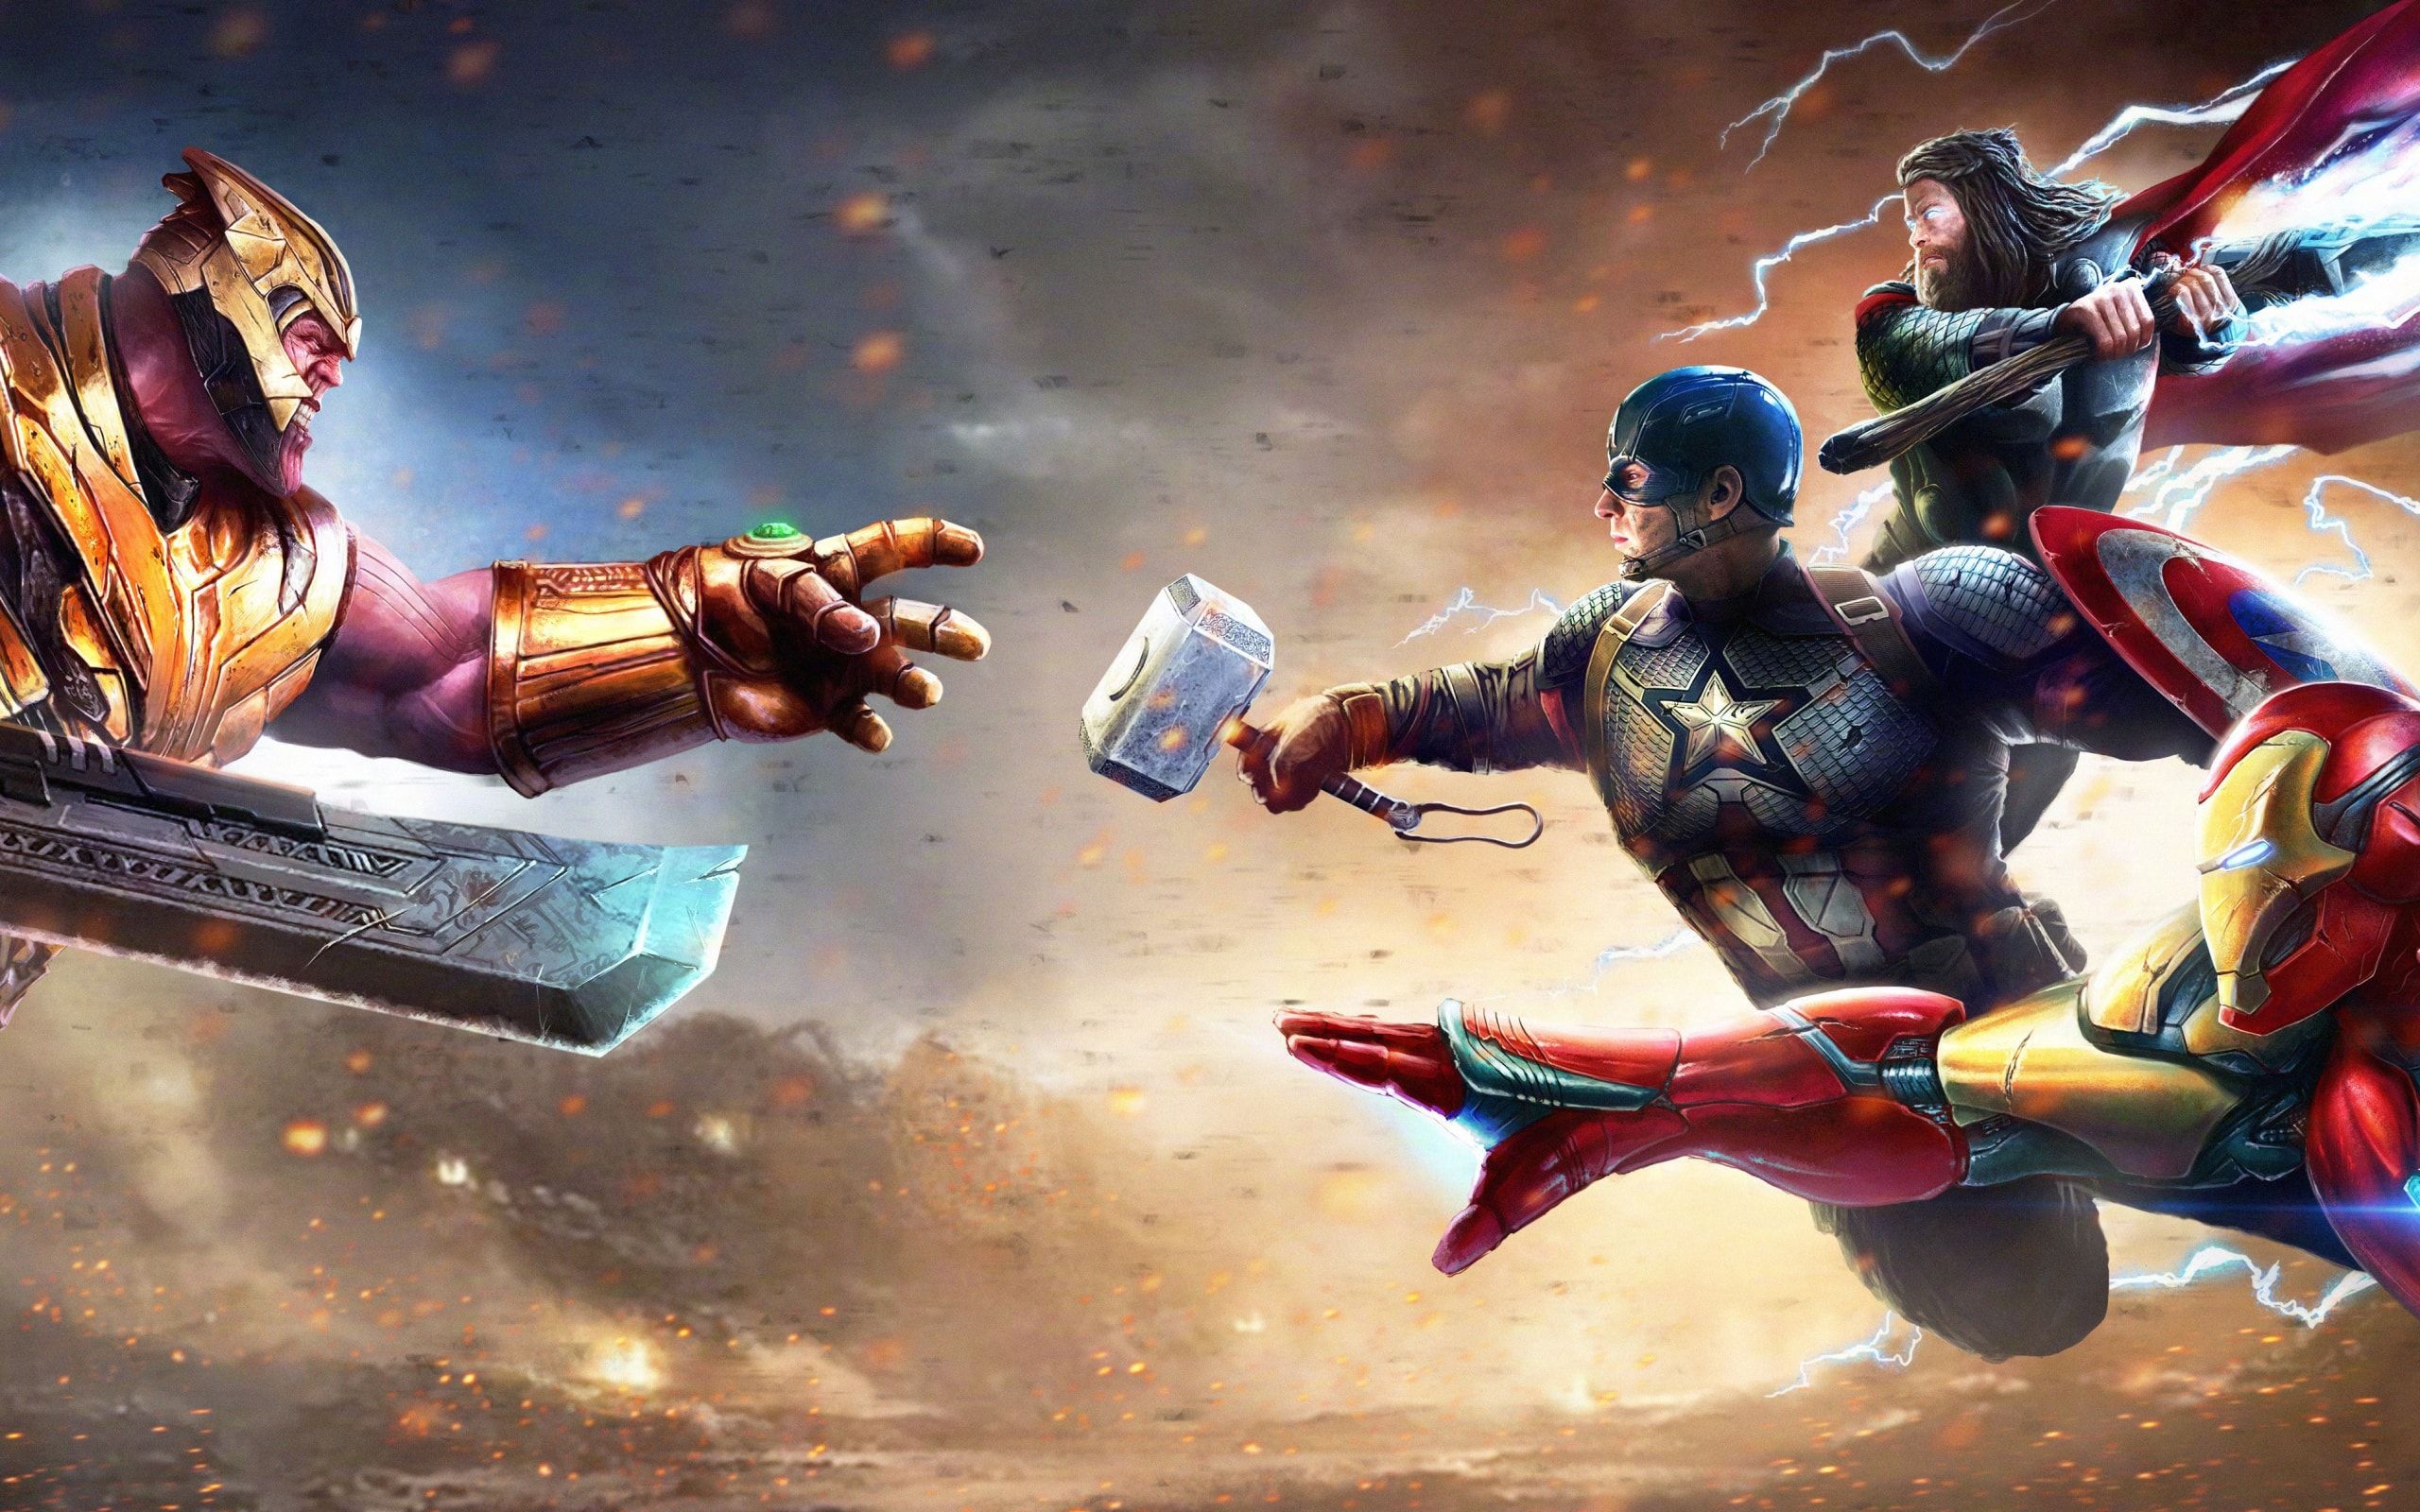 Wallpaper Of Captain America, Iron Man, Thanos, Thor Man Captain America Thor Vs Thanos